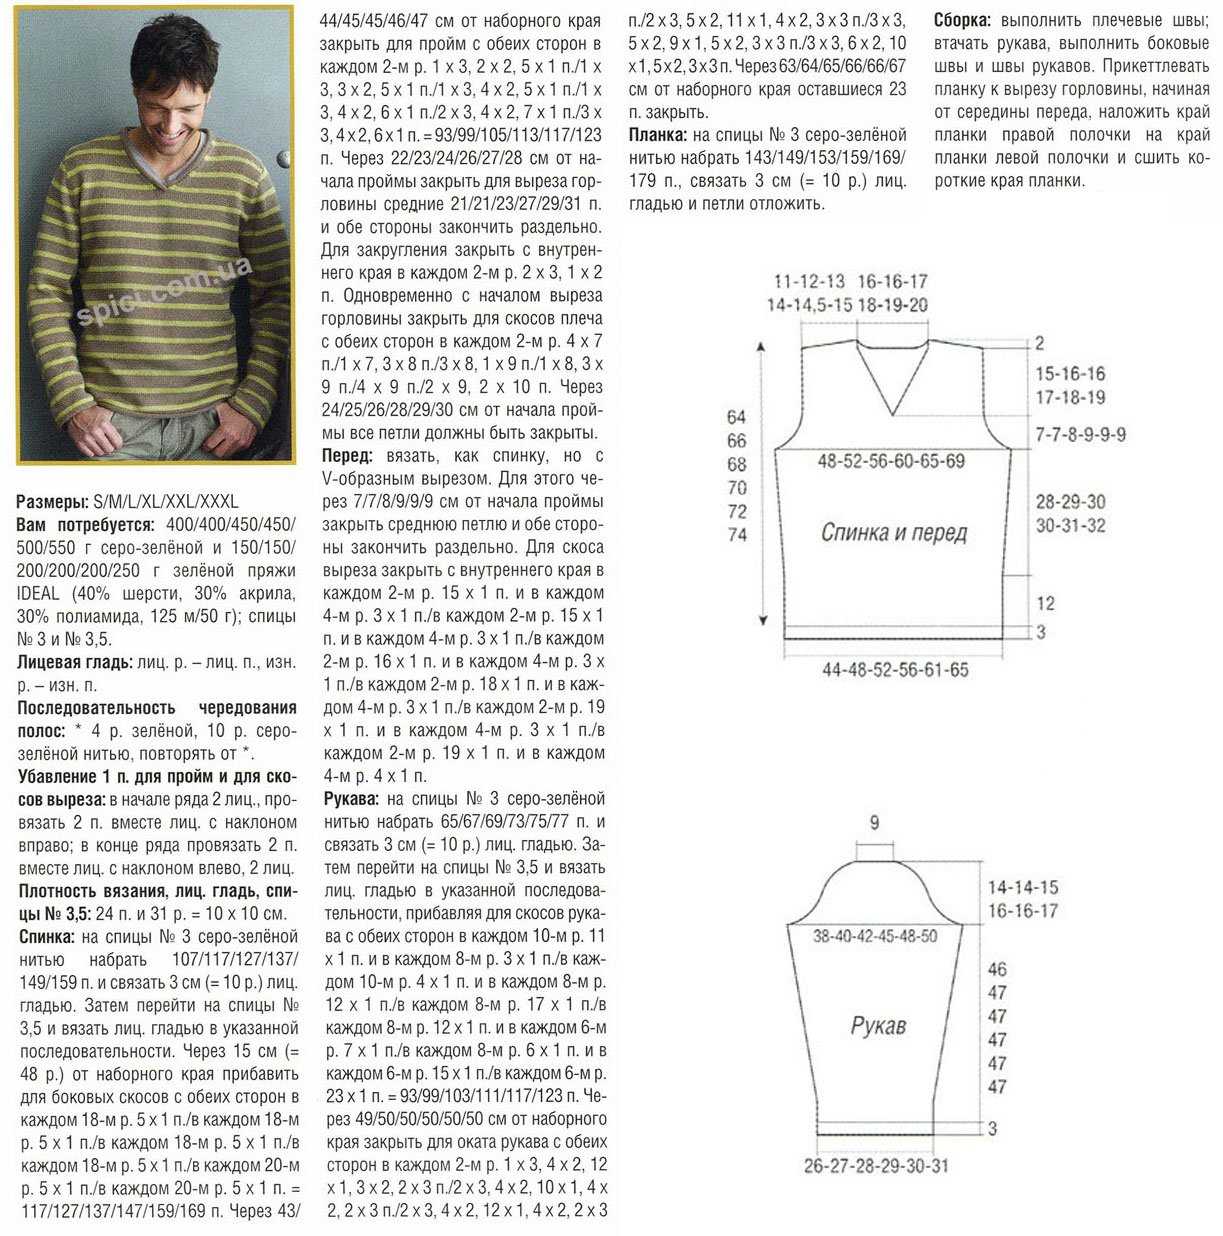 Мужской свитер с узором косами спицами: описание, схемы, видео мк, 5 моделей